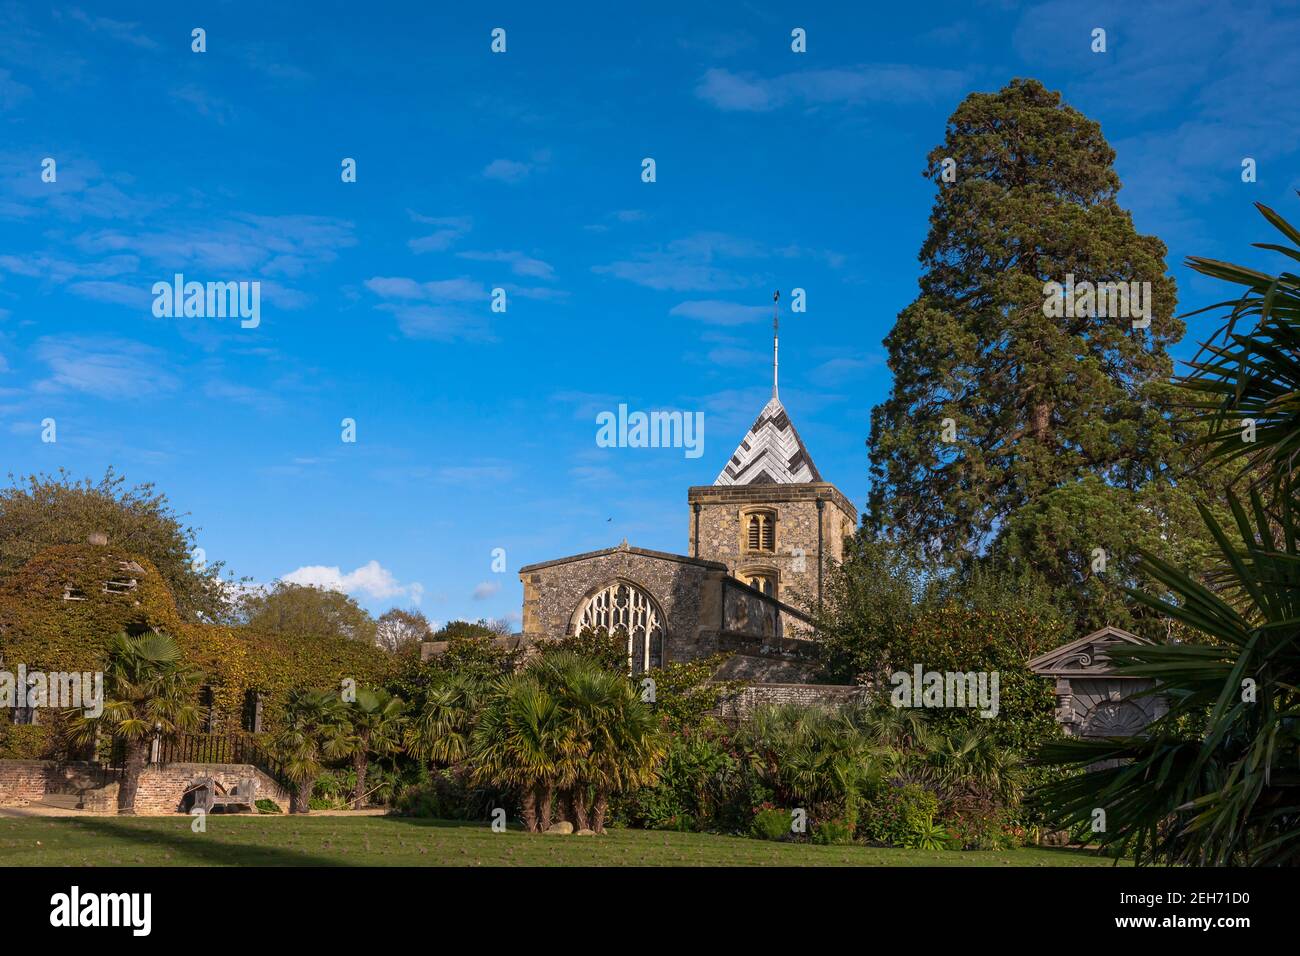 Le jardin d'Ear de Colllector, avec l'église paroissiale St Nicholas au-delà, Arundel Castle Gardens, West Sussex, Angleterre, Royaume-Uni Banque D'Images